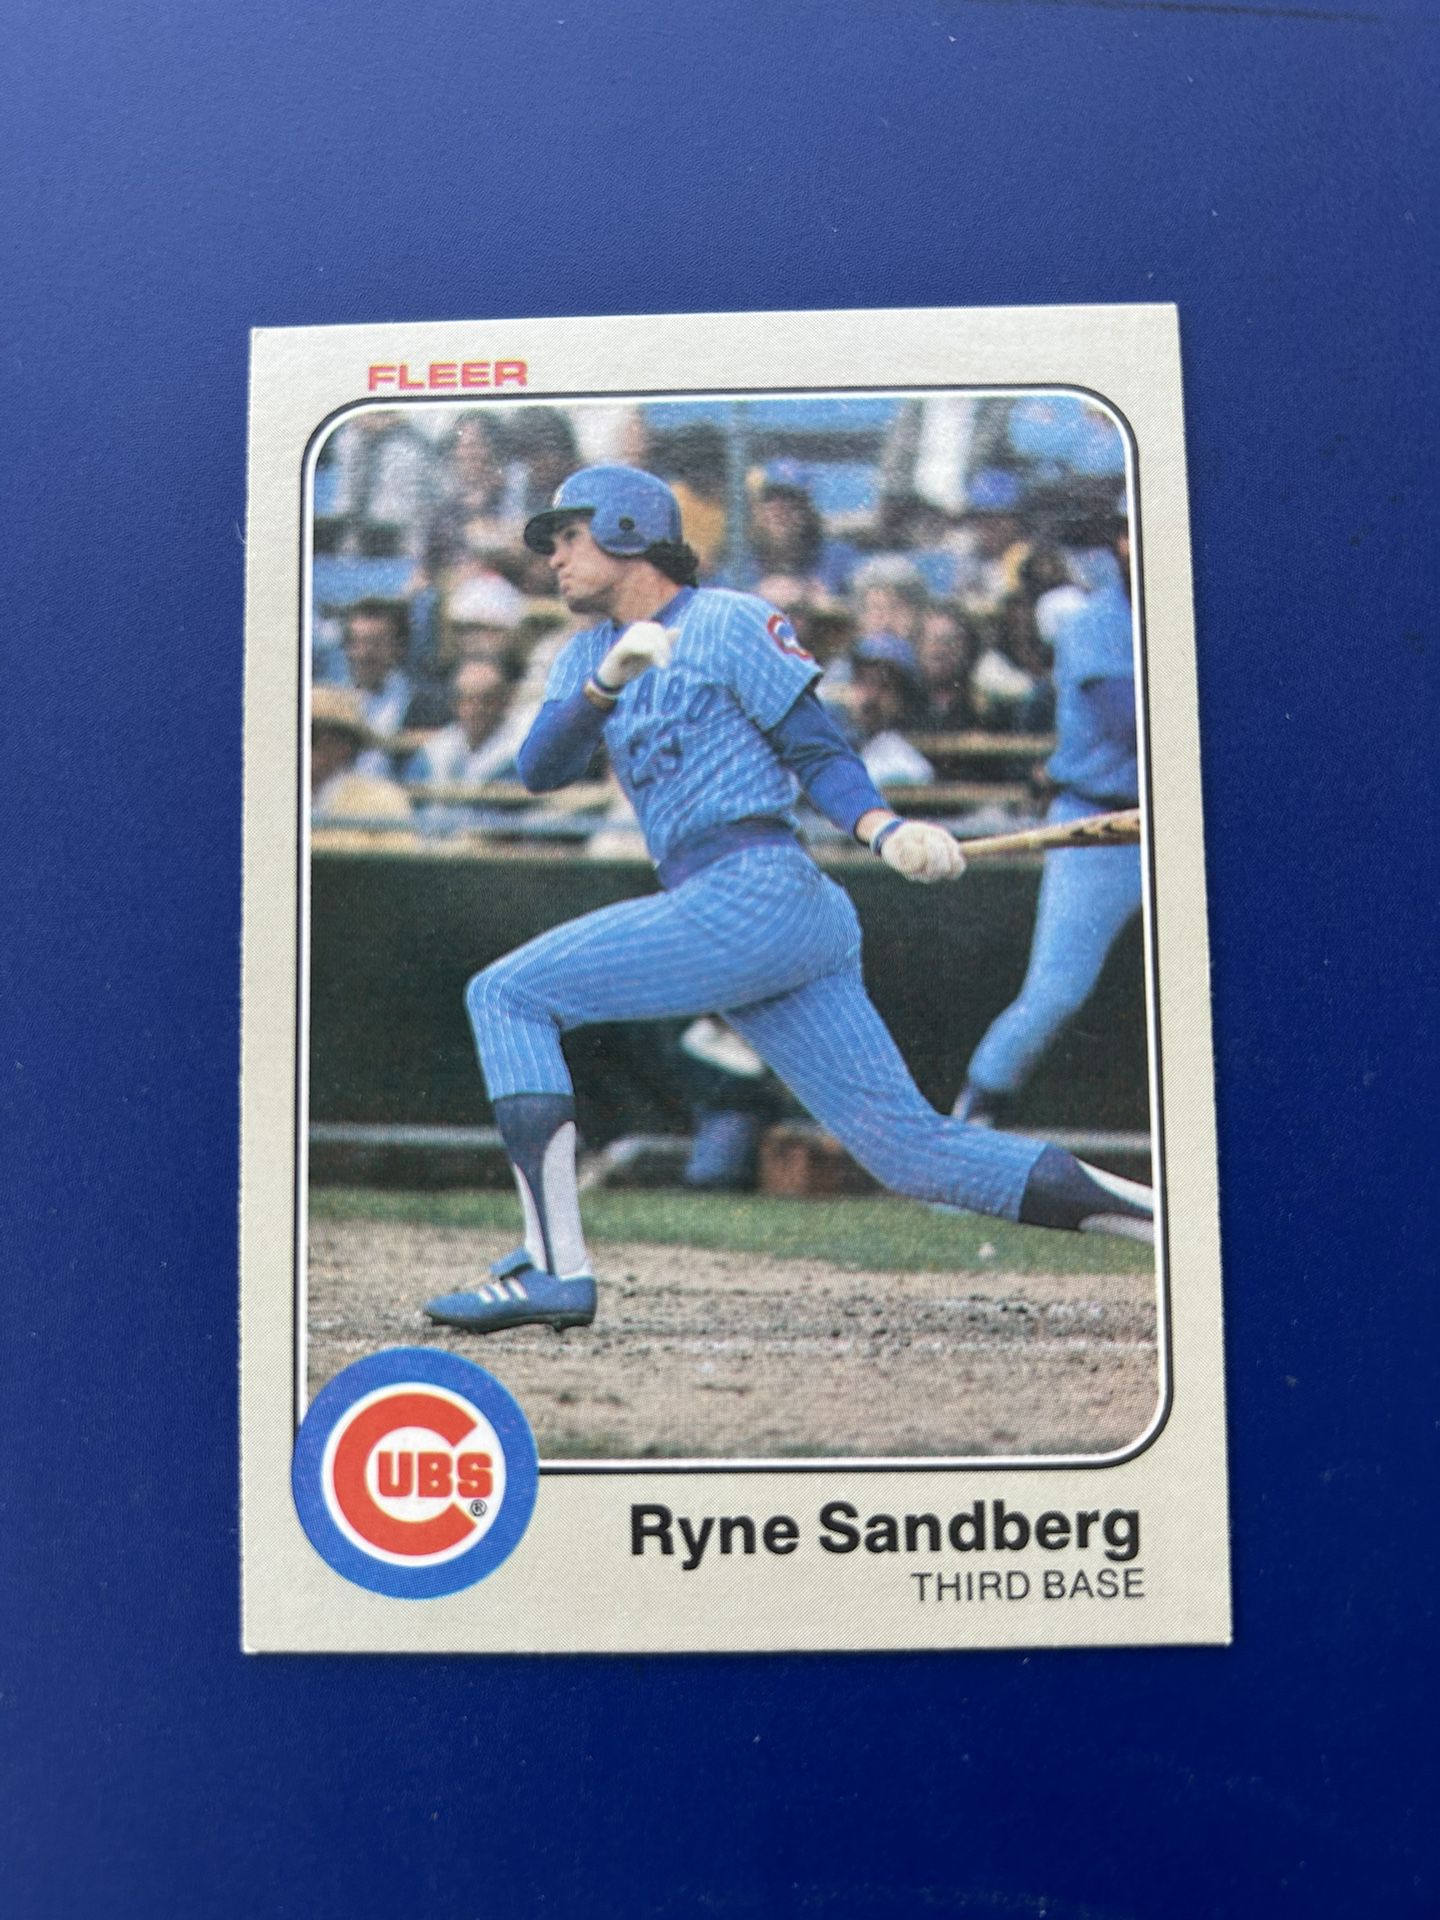 1983 Fleer Ryne Sandberg Rookie Baseball Card 